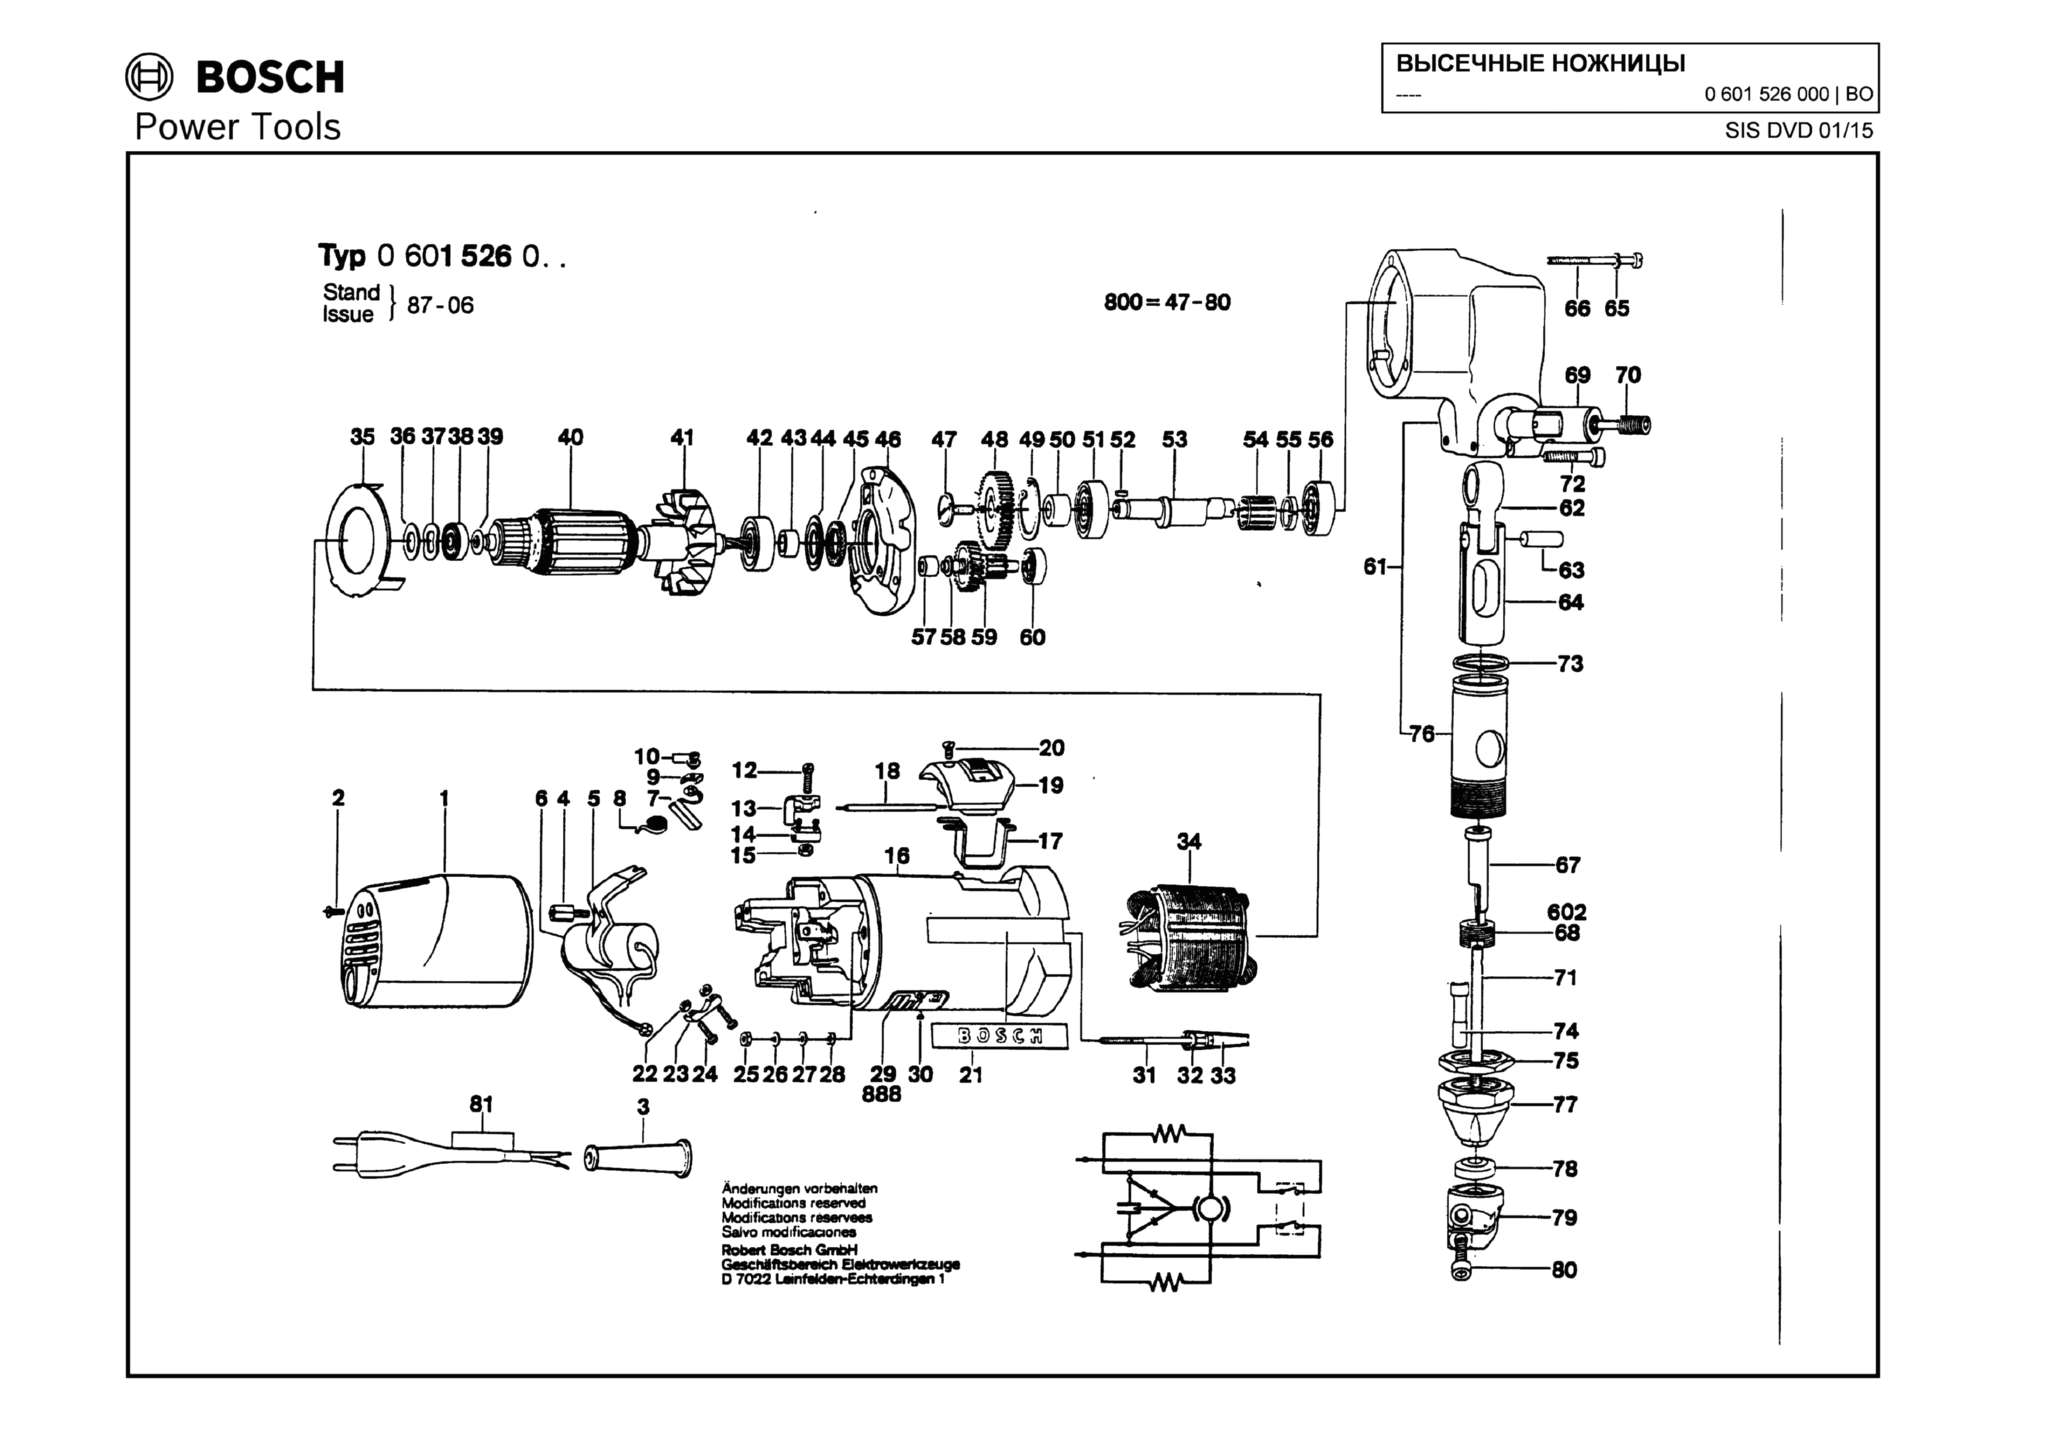 Запчасти, схема и деталировка Bosch (ТИП 0601526000)